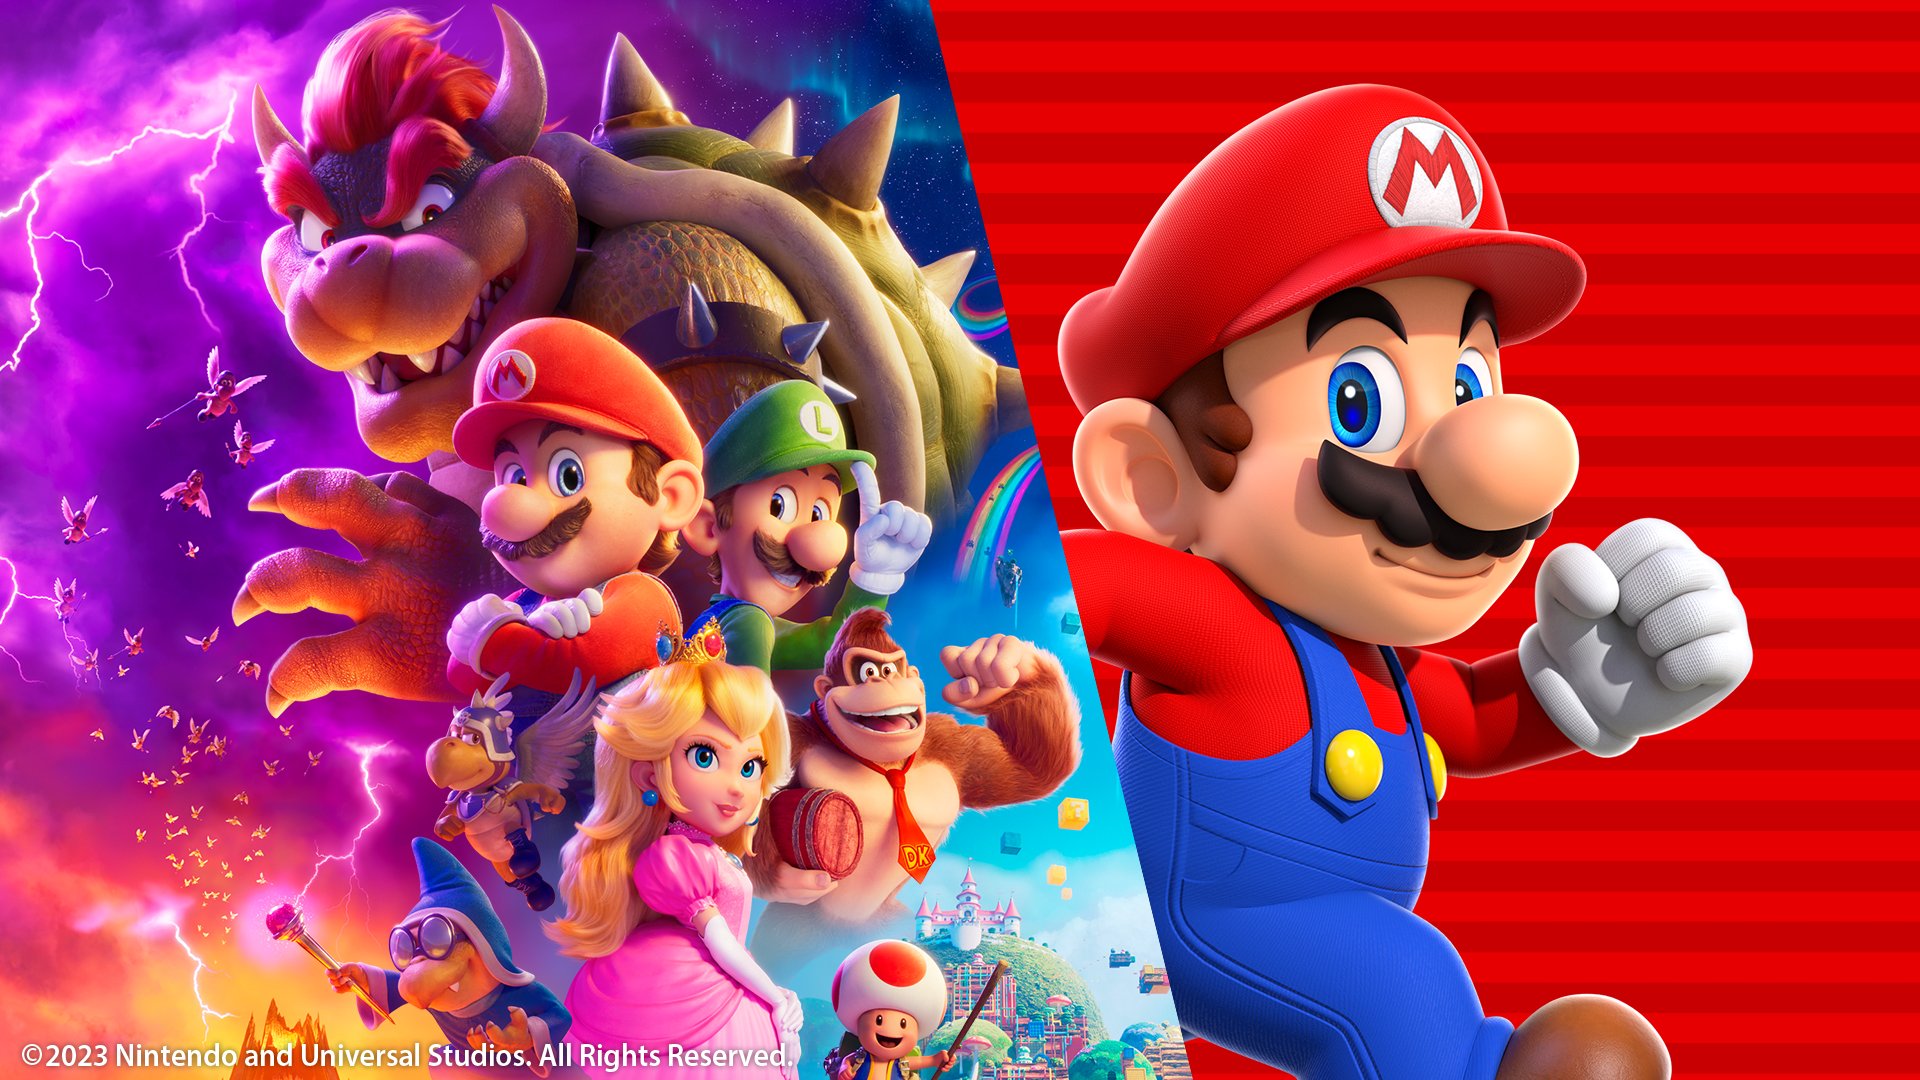 Mar10! Conheça 10 curiosidades sobre o game Super Mario